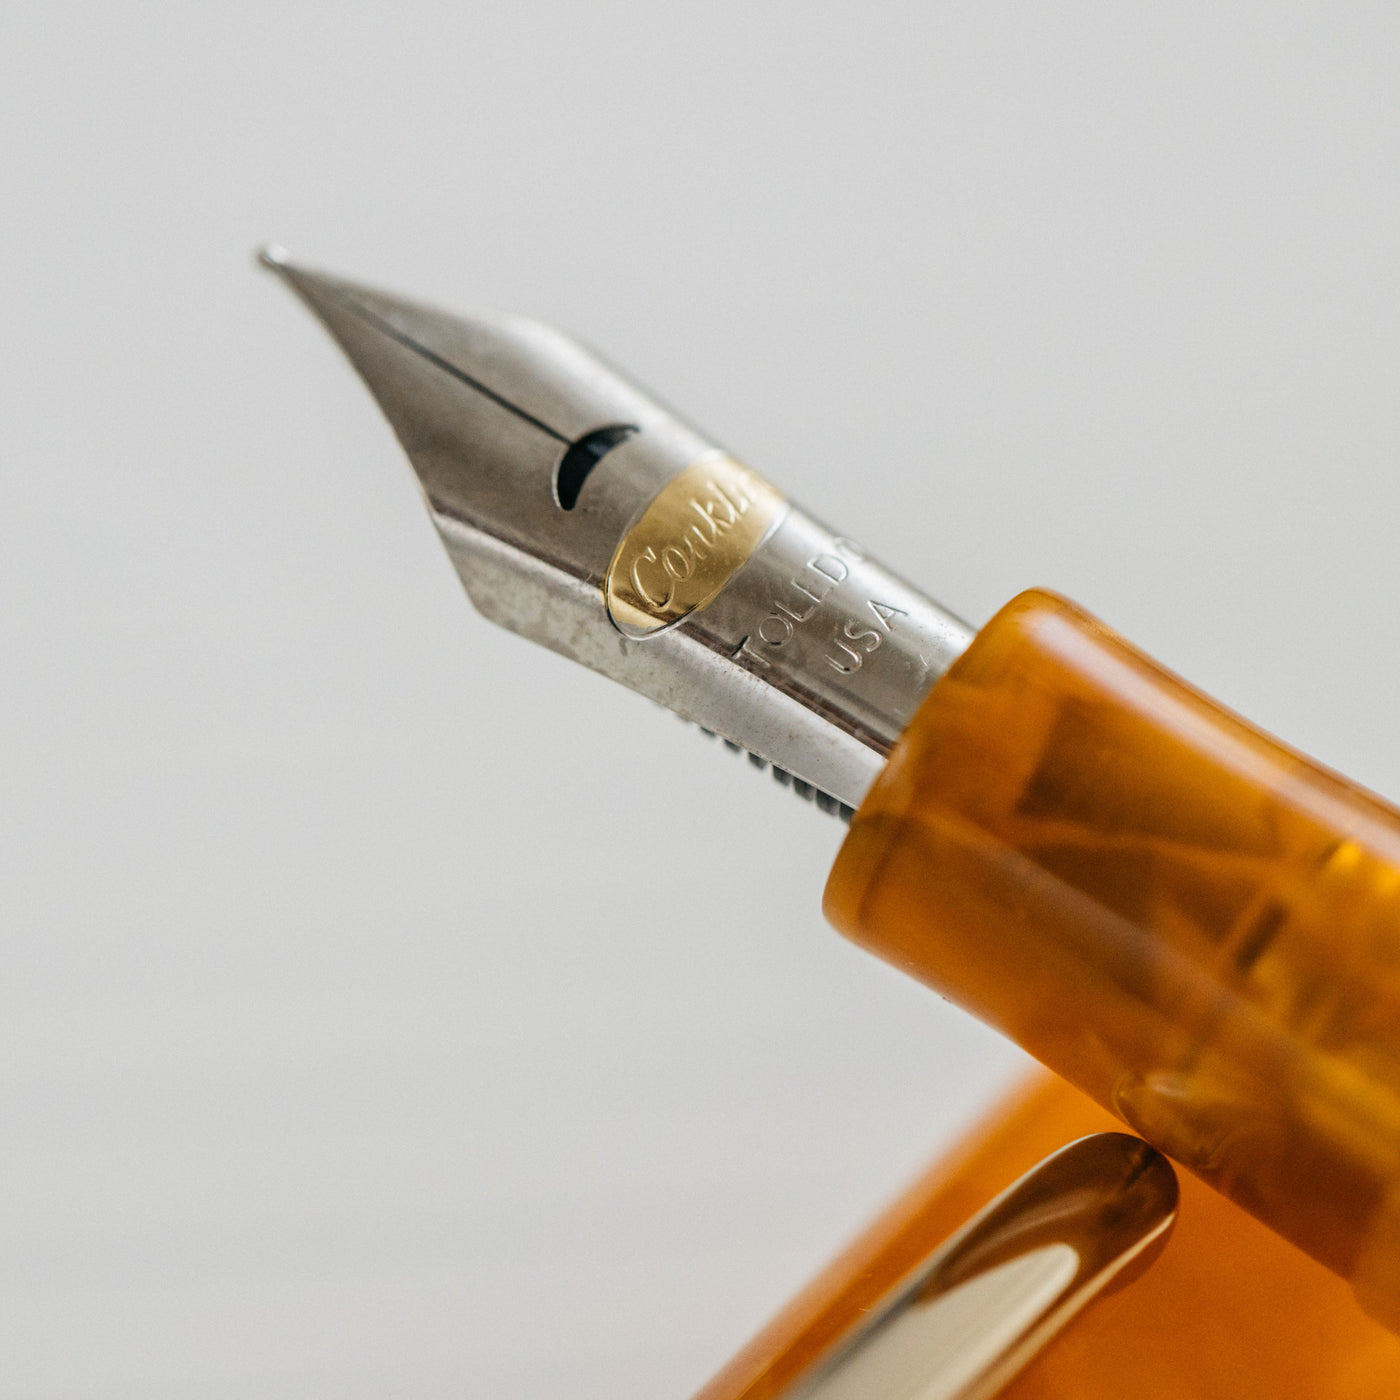 Conklin All American Sunburst Orange Fountain Pen